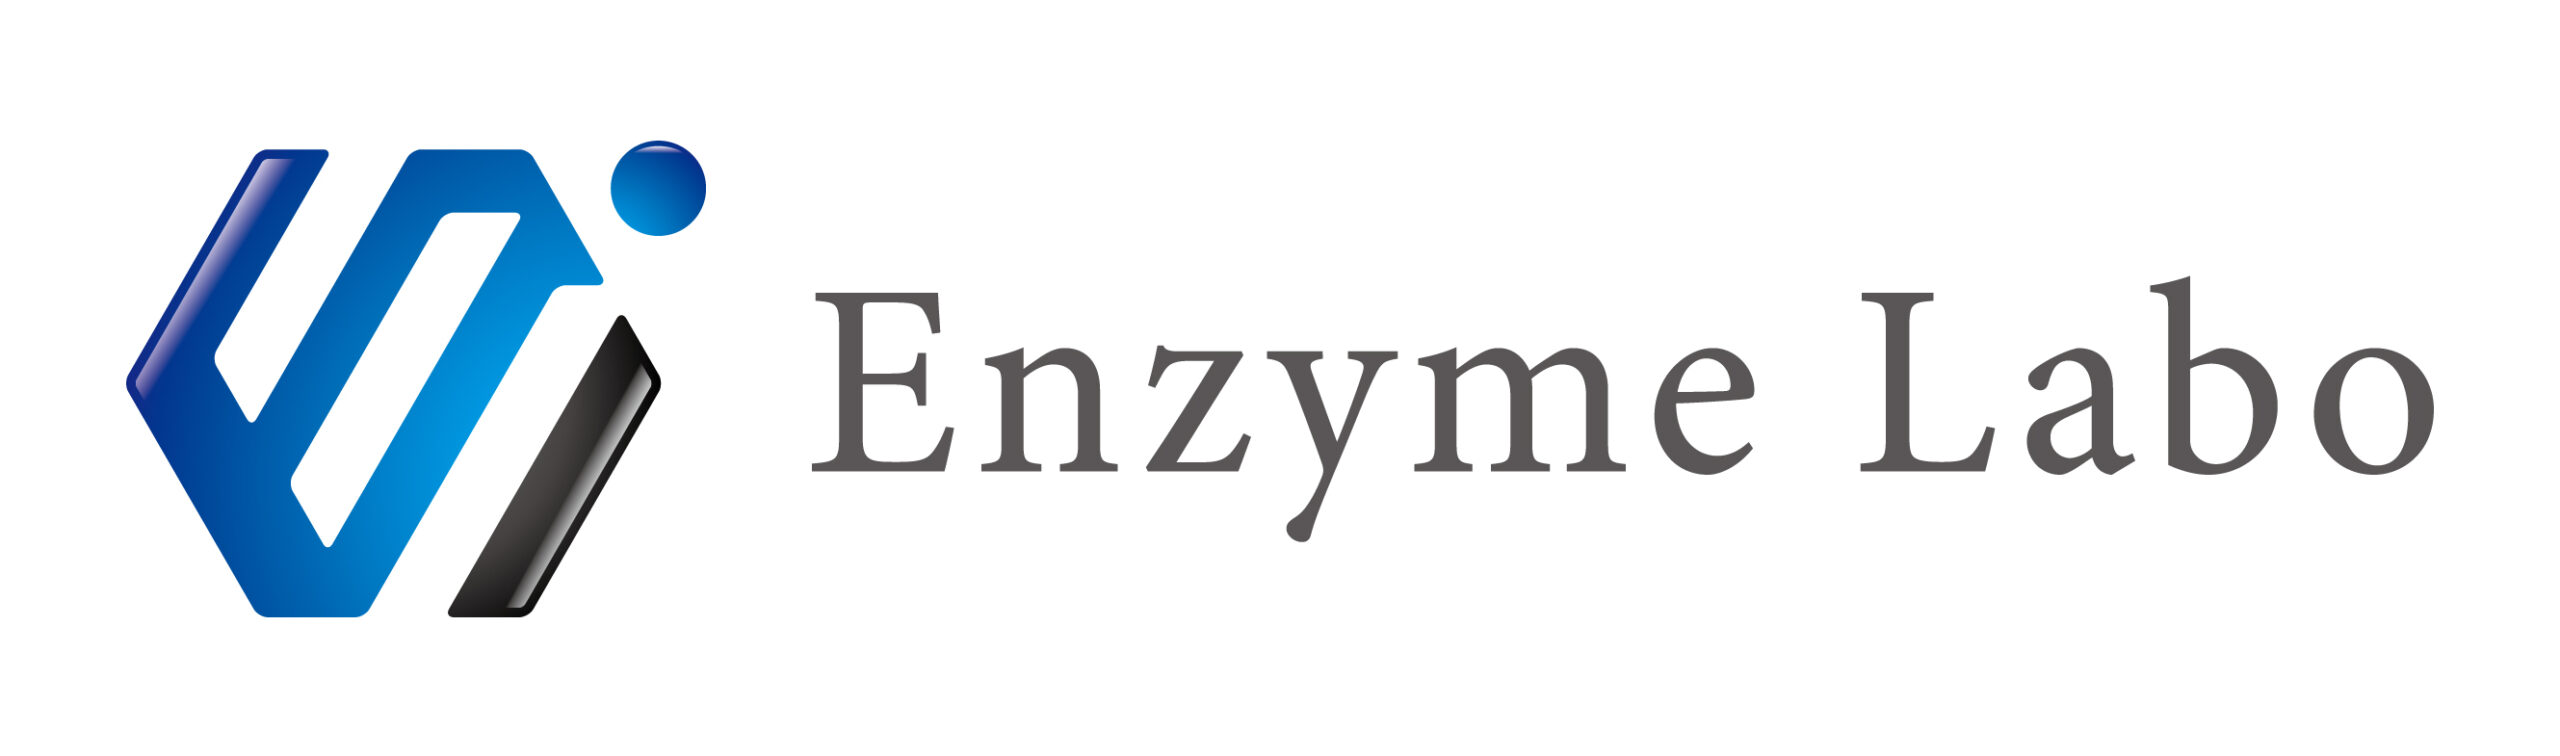 株式会社Enzyme Labo